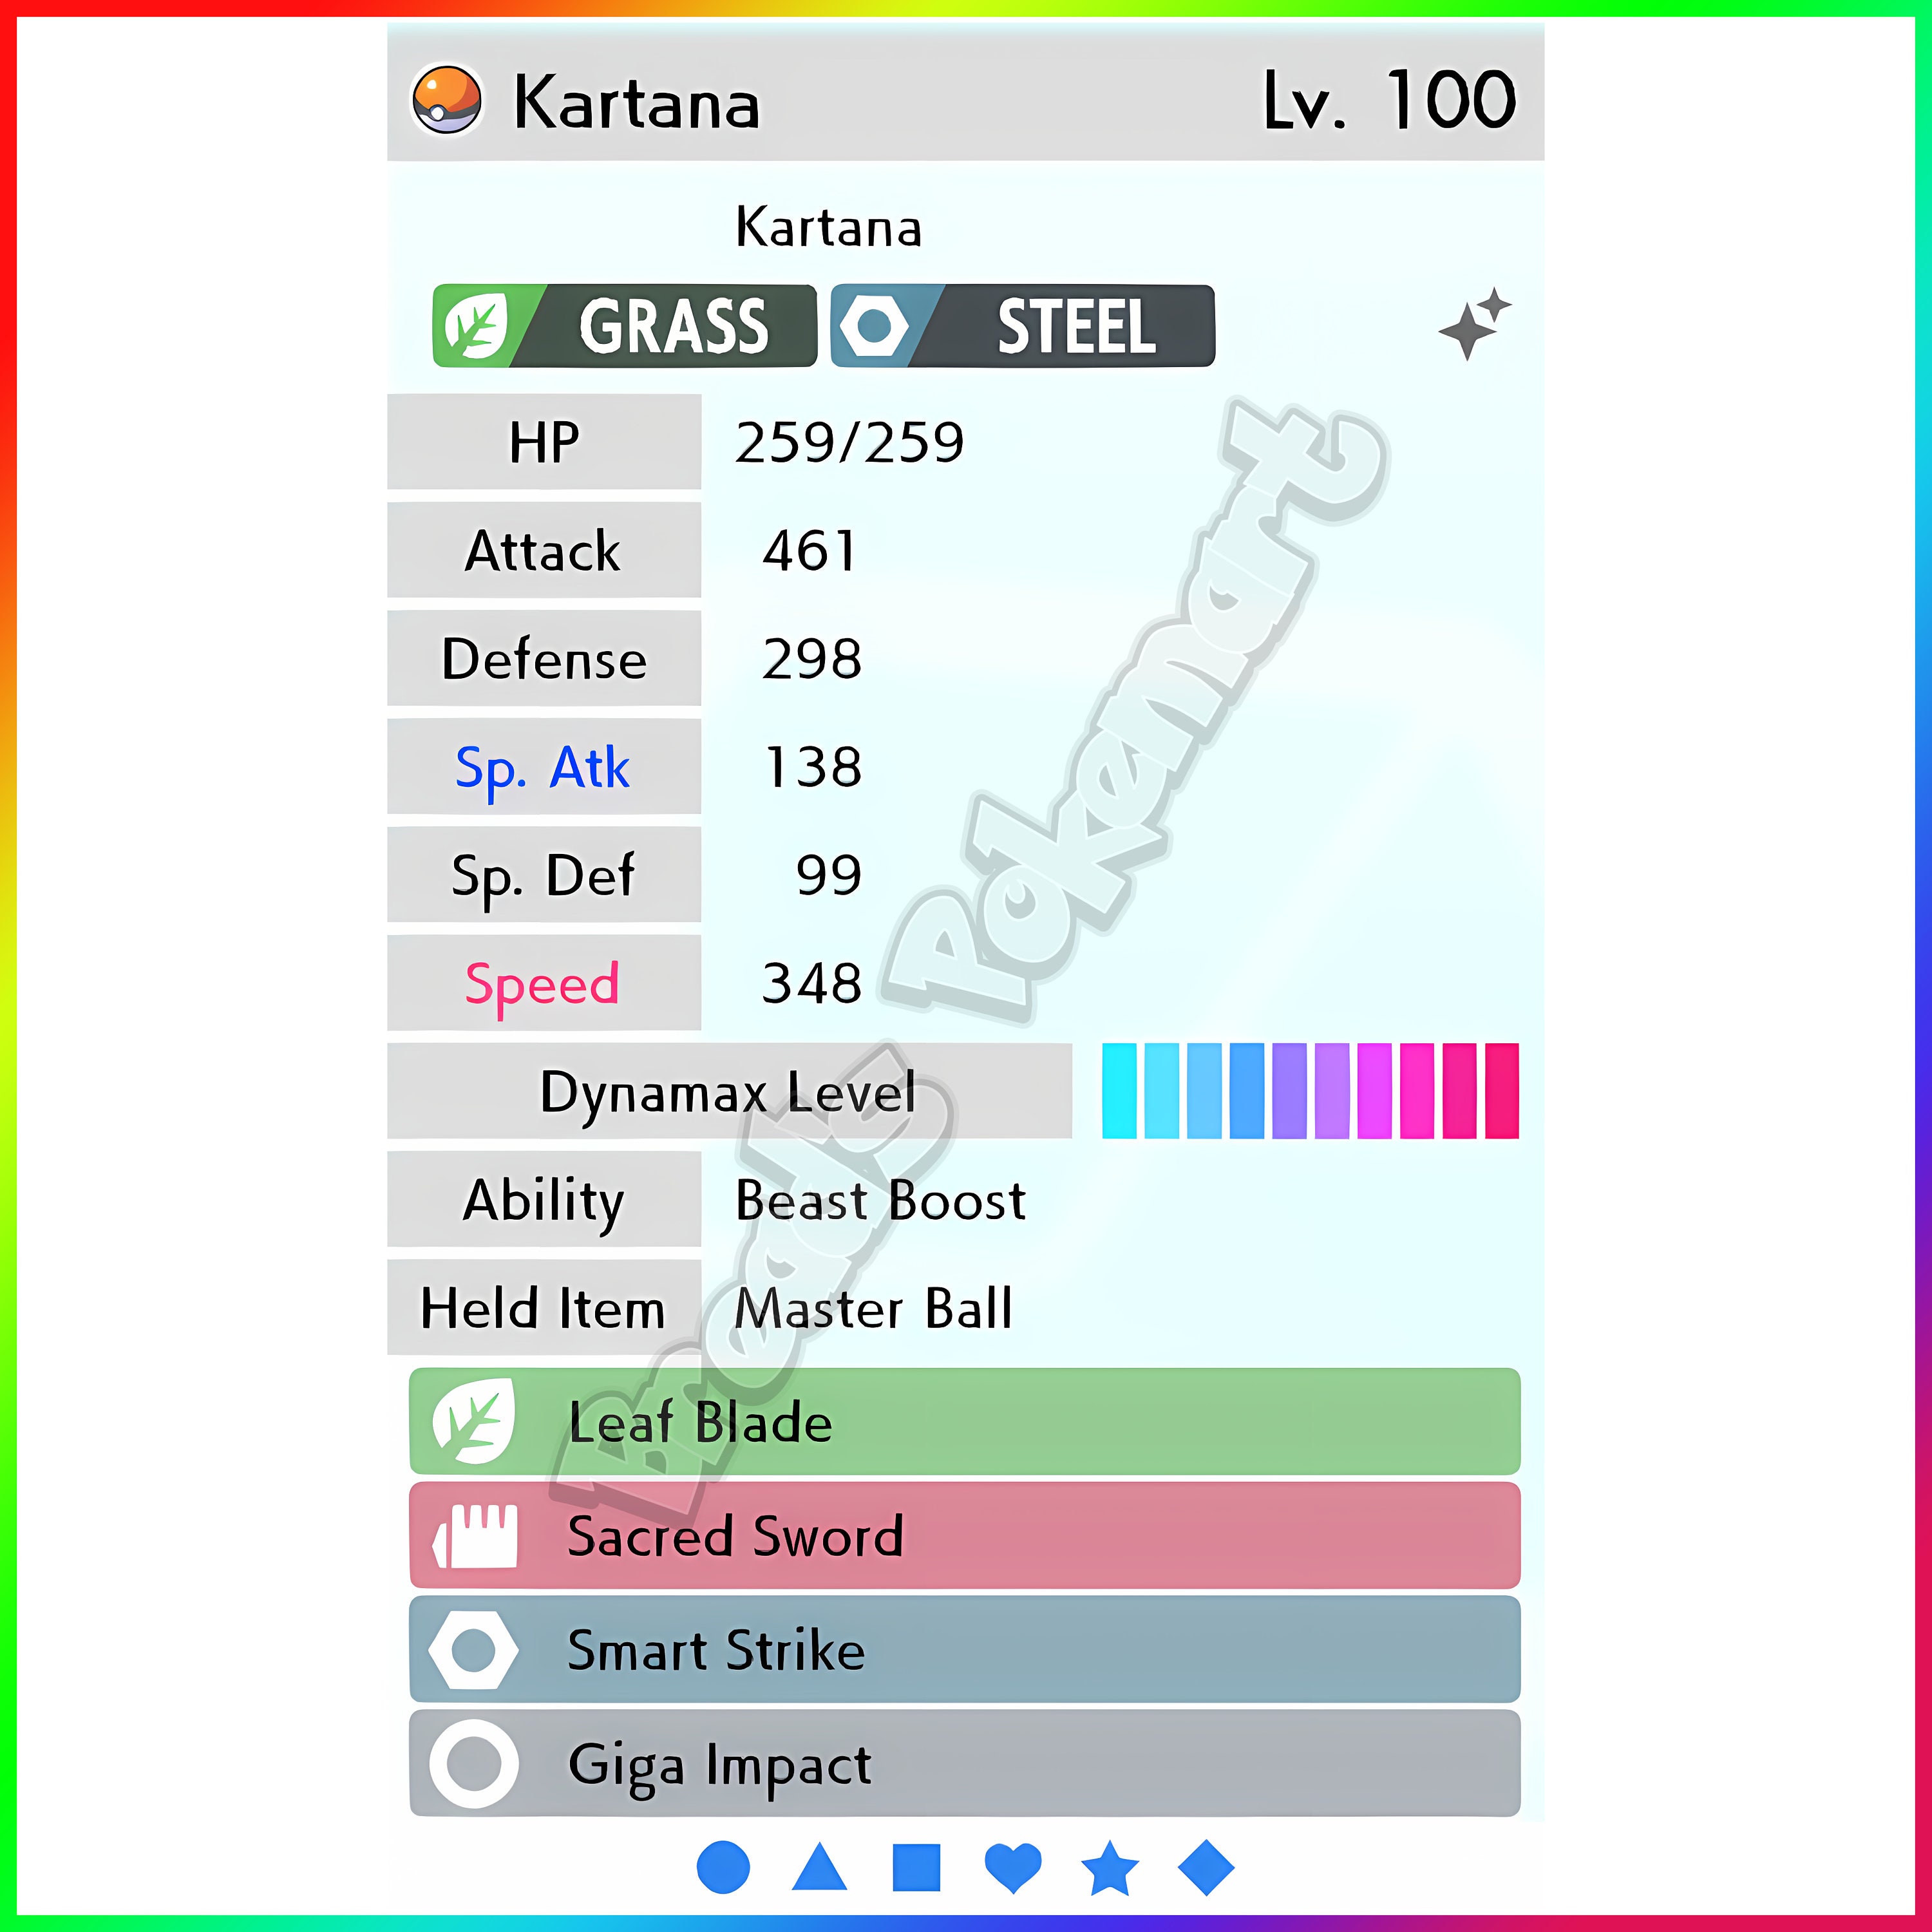 Ultra SHINY 6IV KARTANA / Pokemon Sword and Shield / Alolan -  Norway